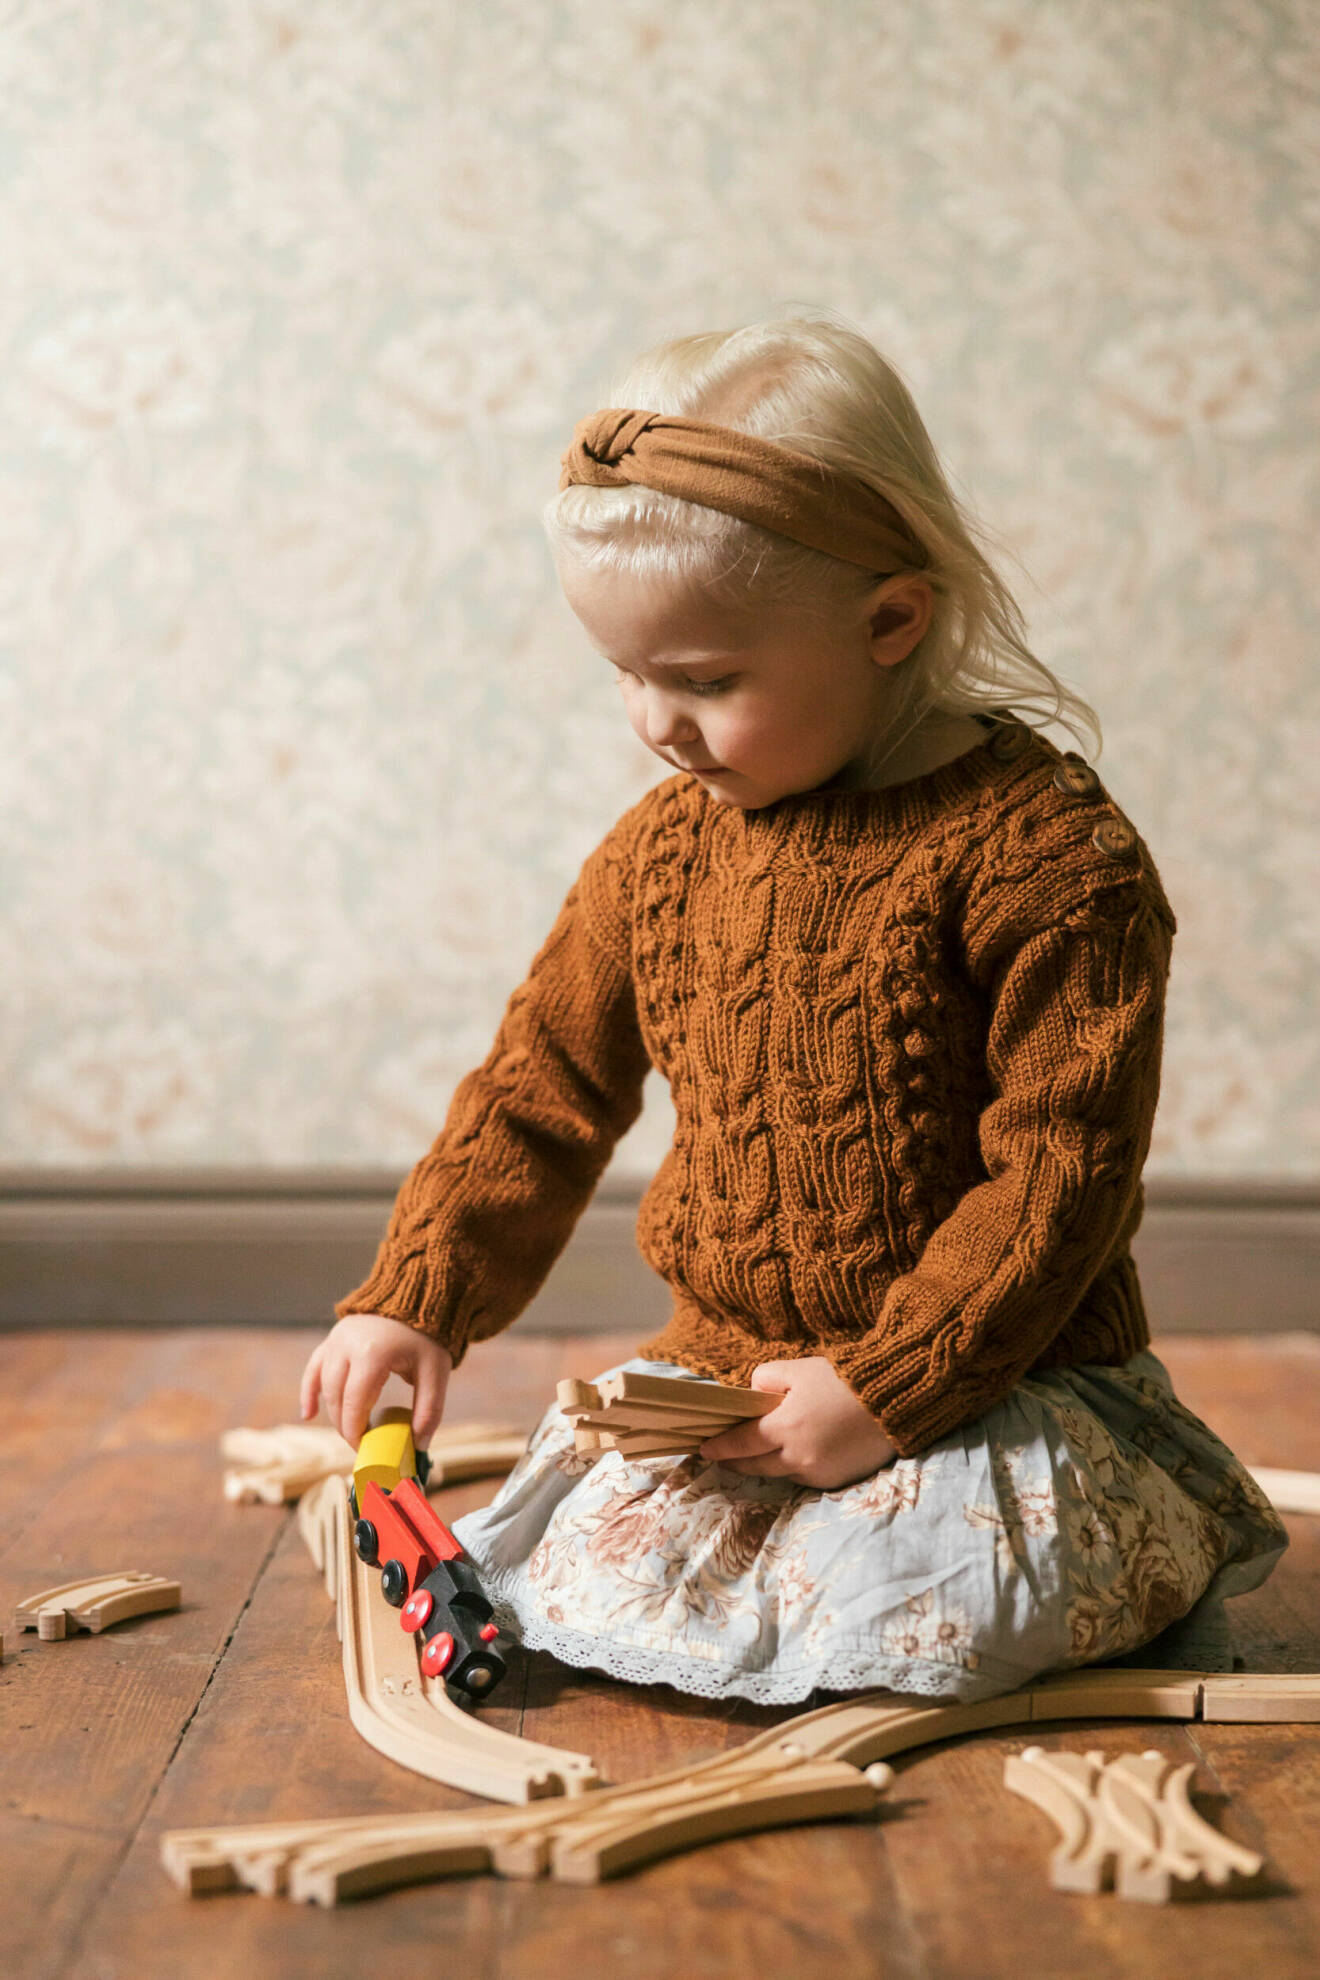 Flicka har på sig en stickad tröja och leker med ett leksakståg.